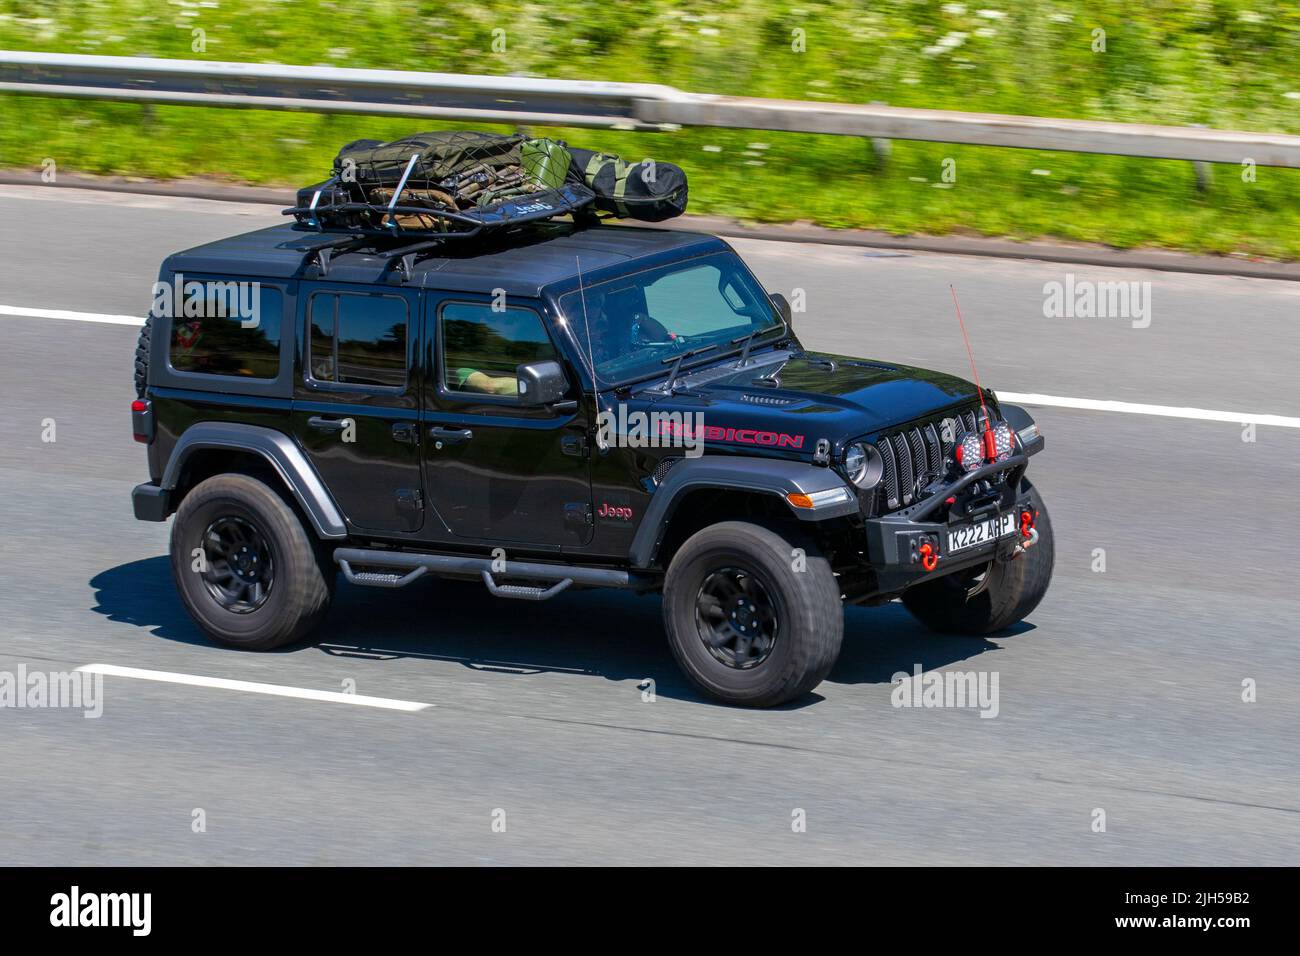 2018 JEEP RUBICON schwarz 1995cc 8-Gang-Geländewagen, Expedition; unterwegs auf der M6 Motorway, Manchester, Großbritannien Stockfoto